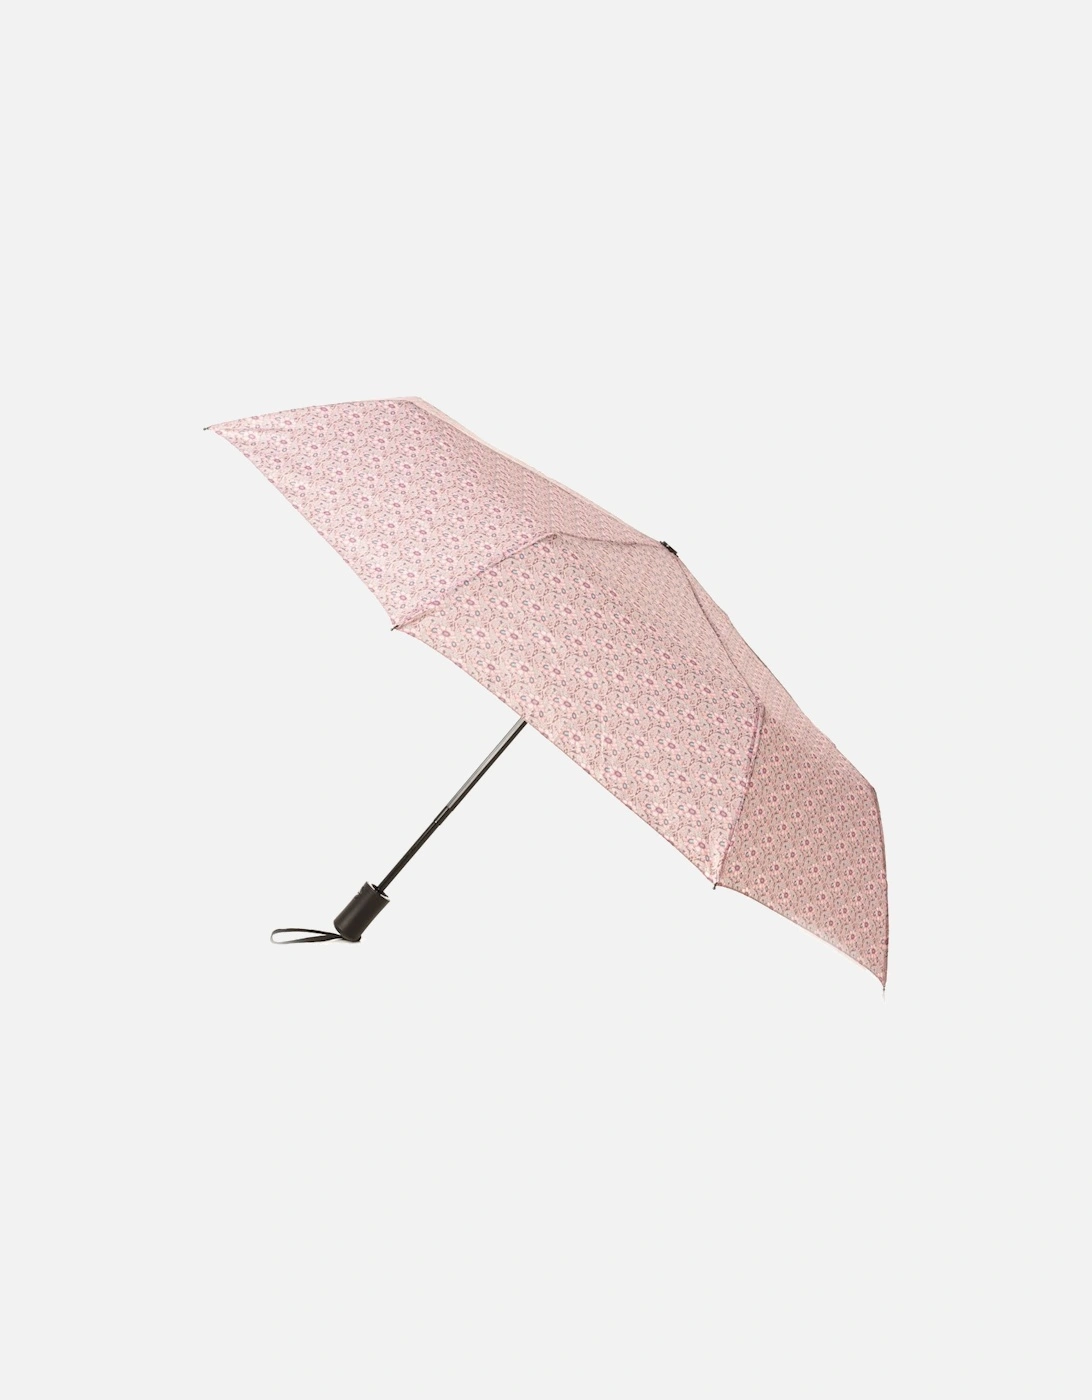 Public Anemone Umbrella, 2 of 1